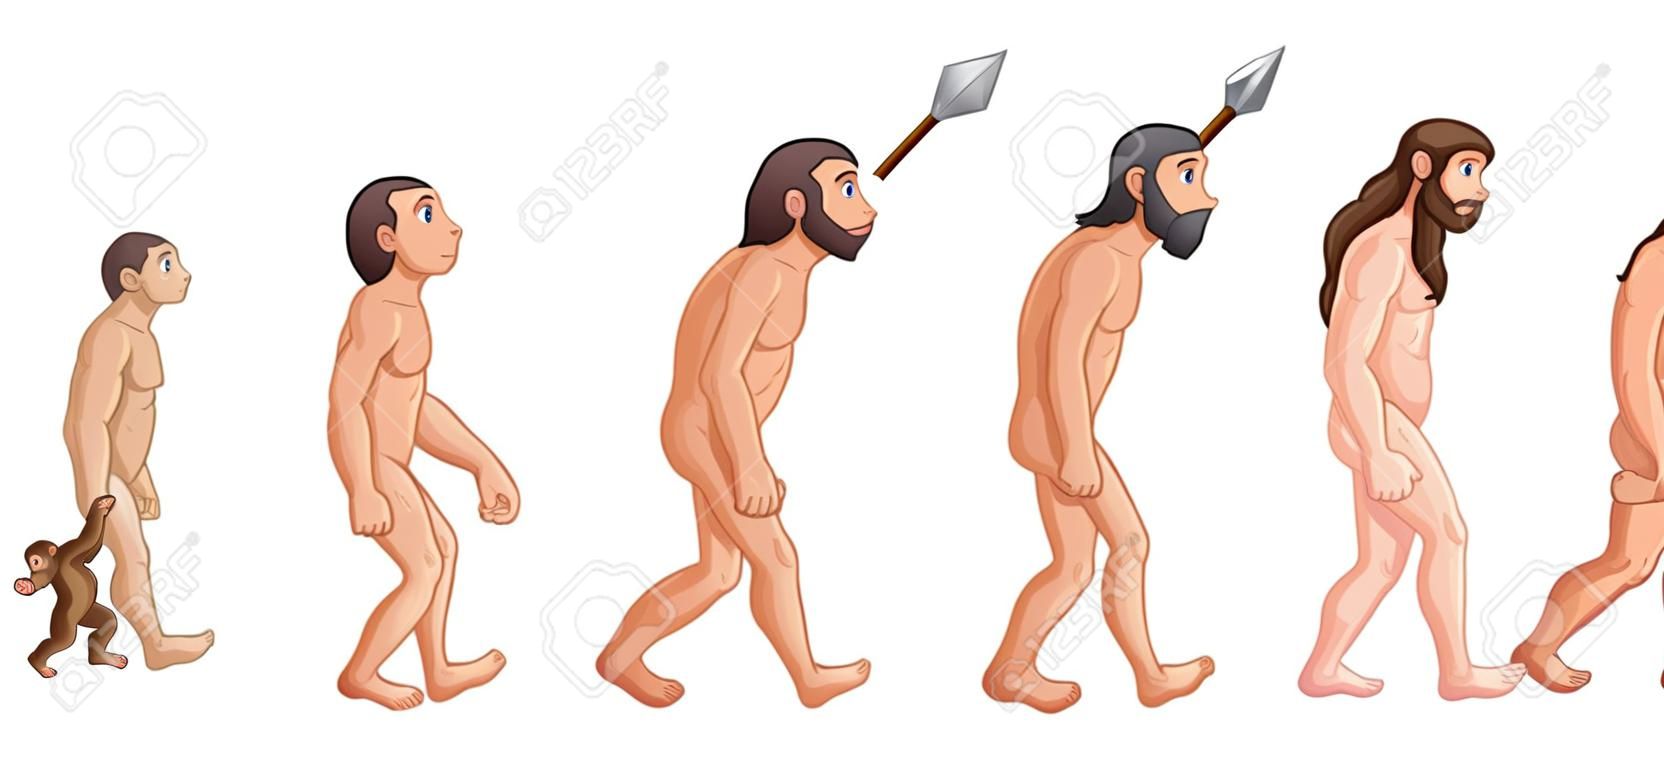 Vector illustration of Cartoon human evolution